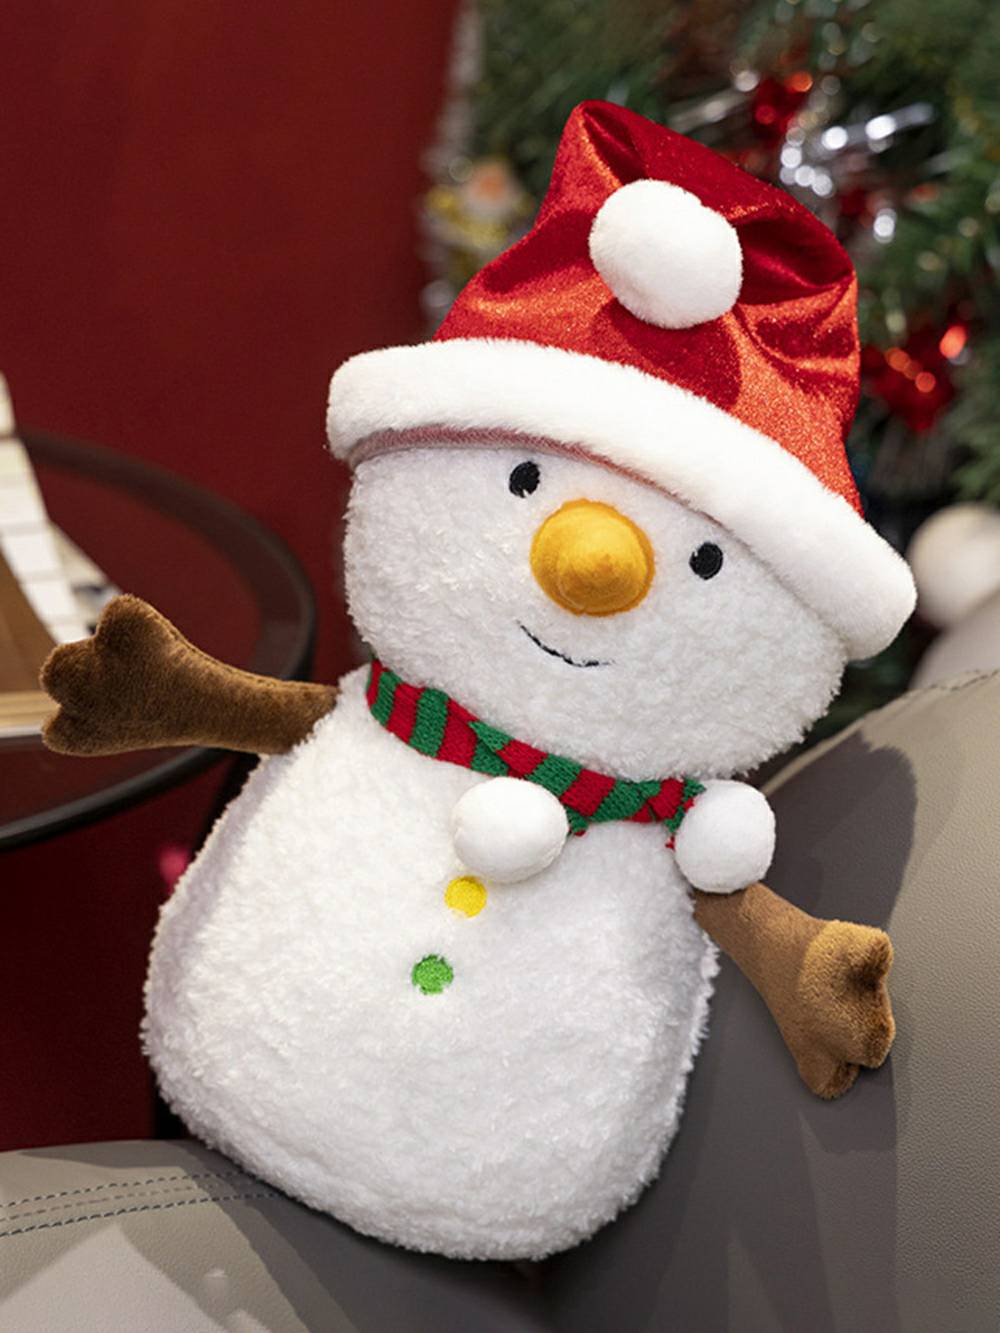 스카프를 착용하는 크리스마스 눈사람 장난감